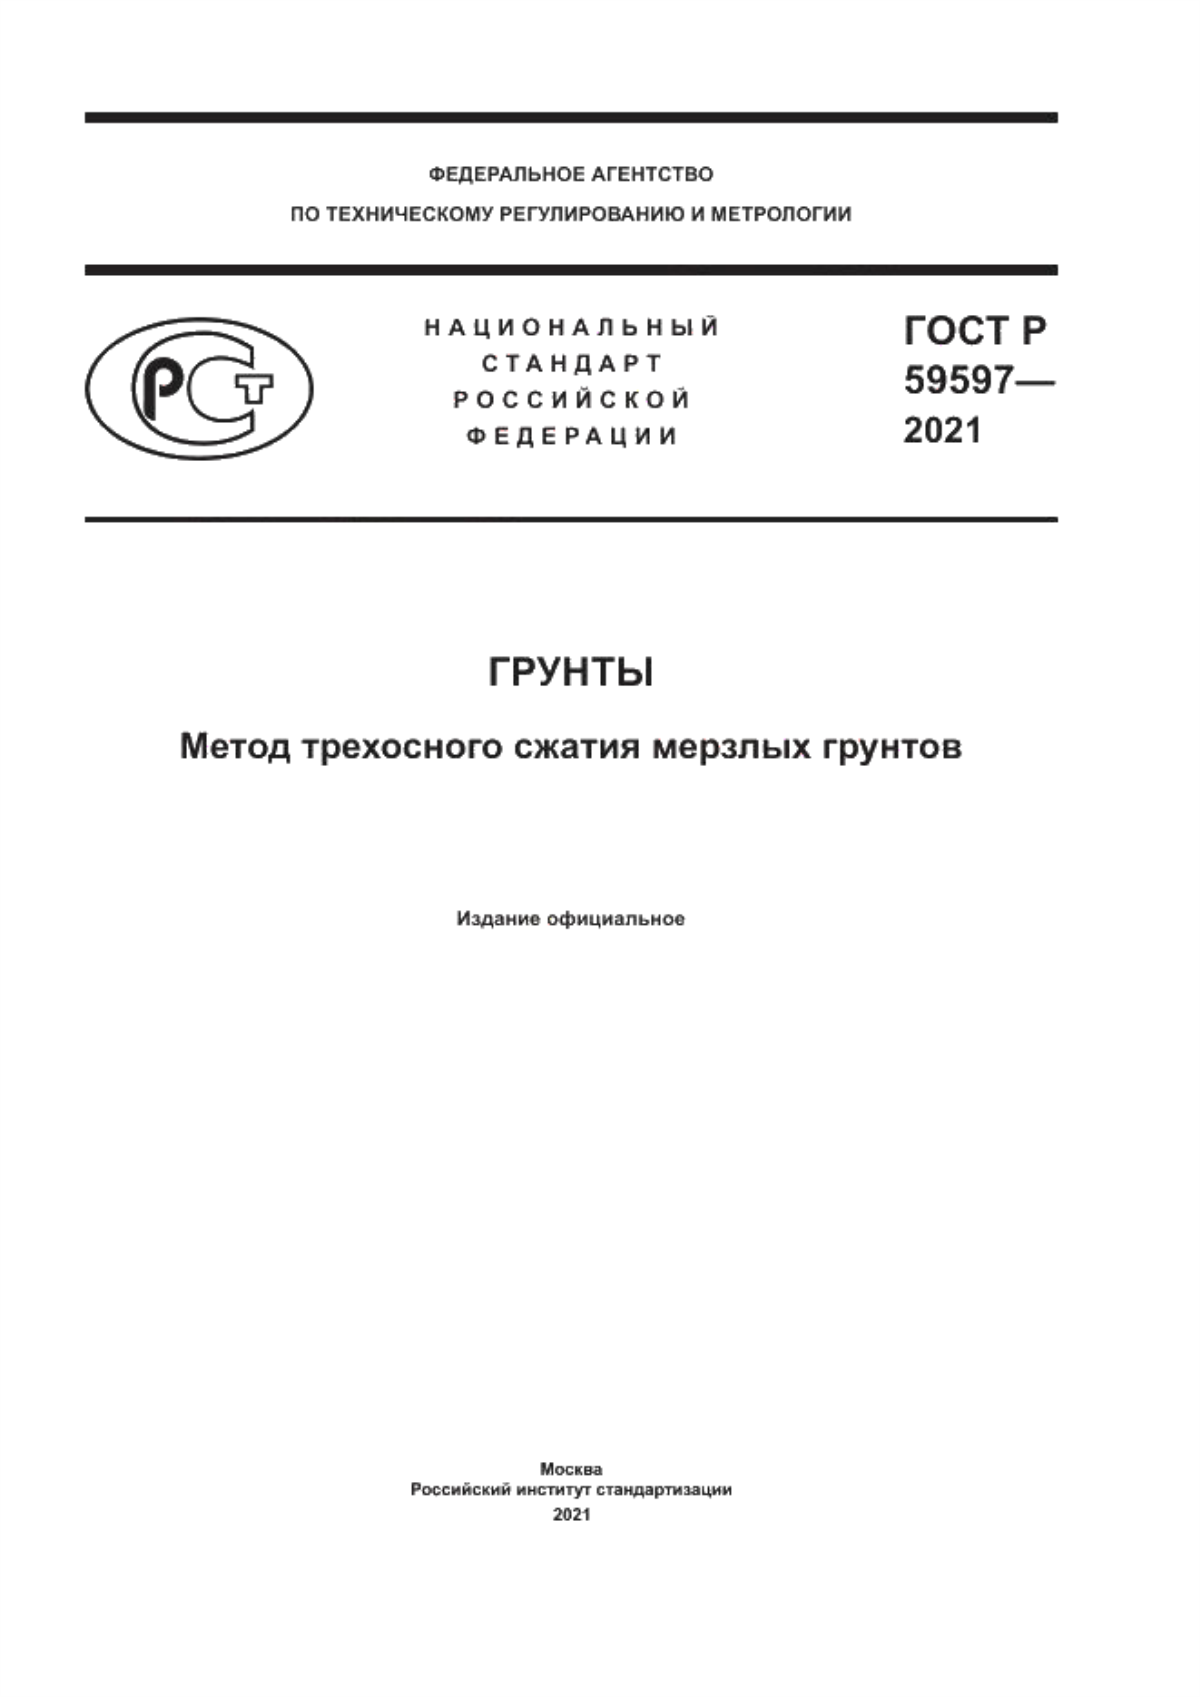 ГОСТ Р 59597-2021 Грунты. Метод трехосного сжатия мерзлых грунтов